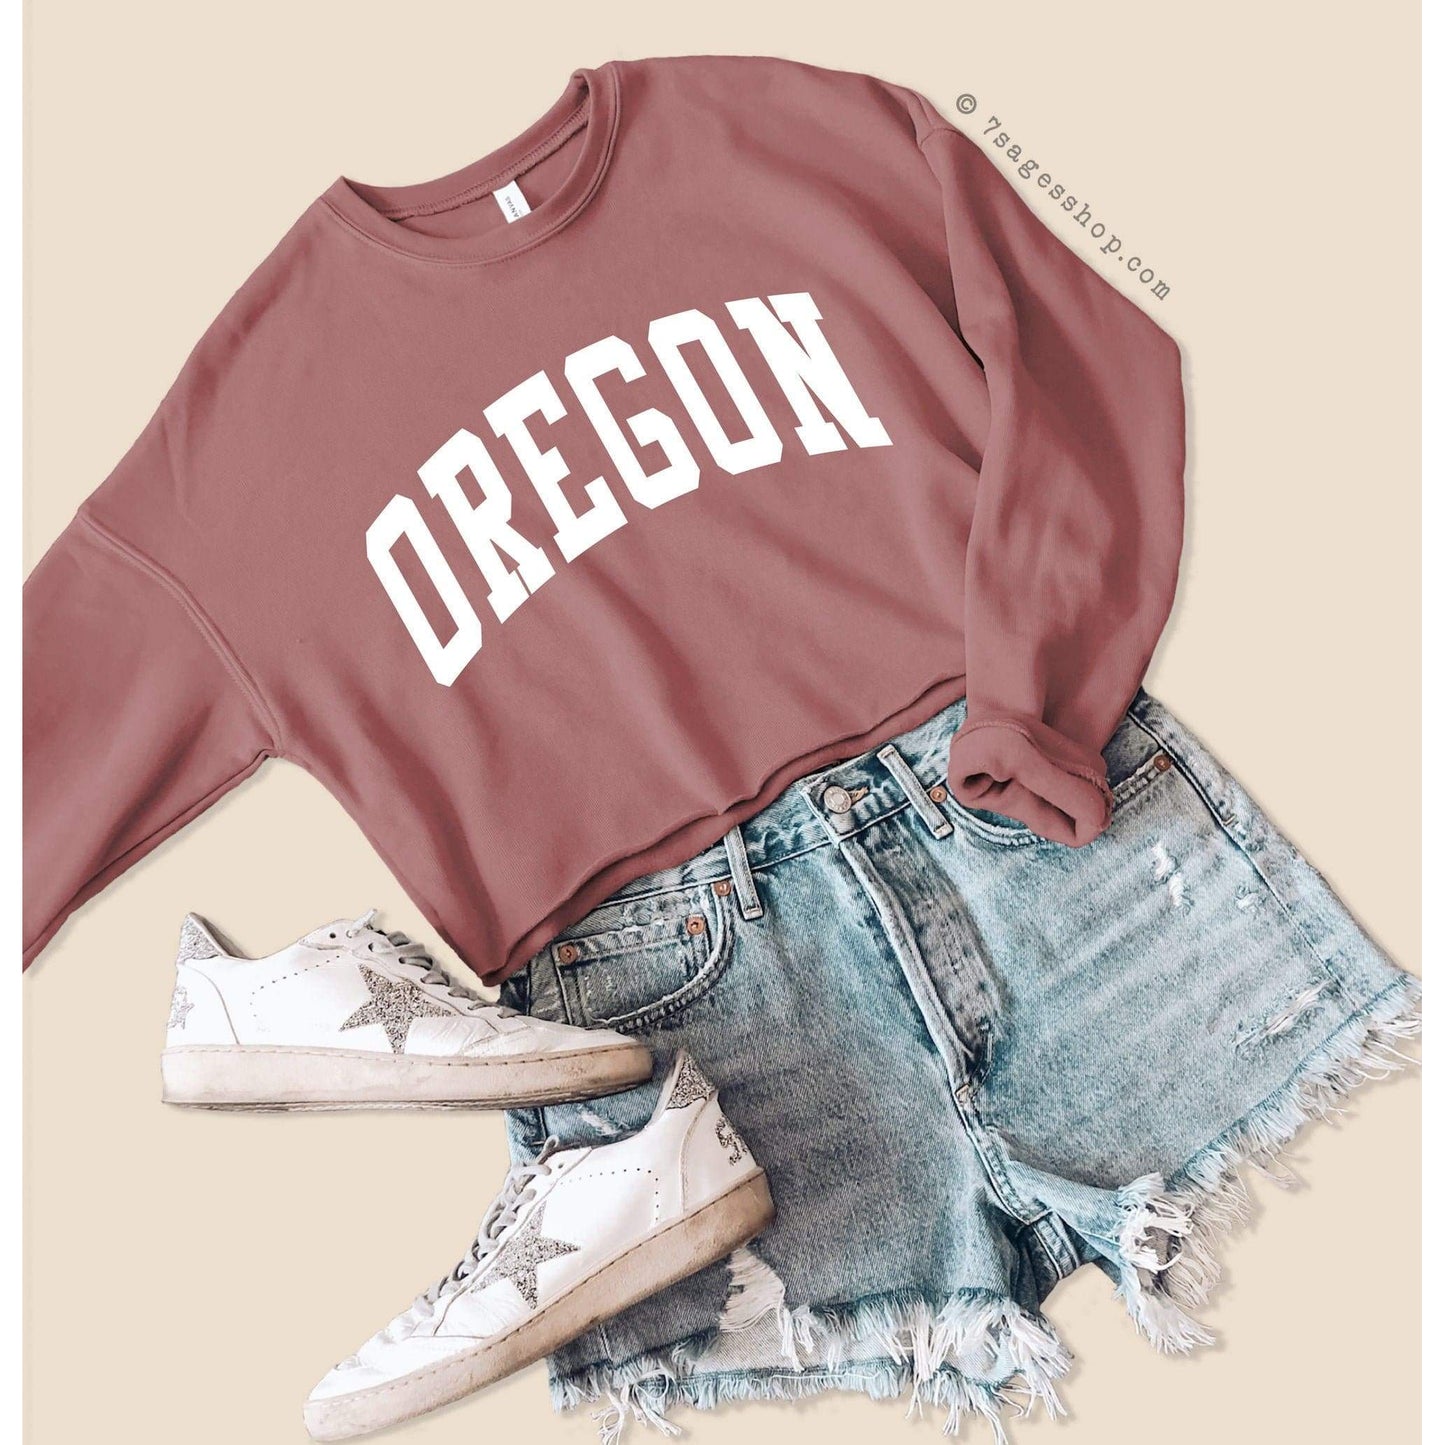 Oregon Cropped Sweatshirt - Oregon Sweatshirt - Oregon Shirts - University of Oregon Crop Top - Fleece Sweatshirt